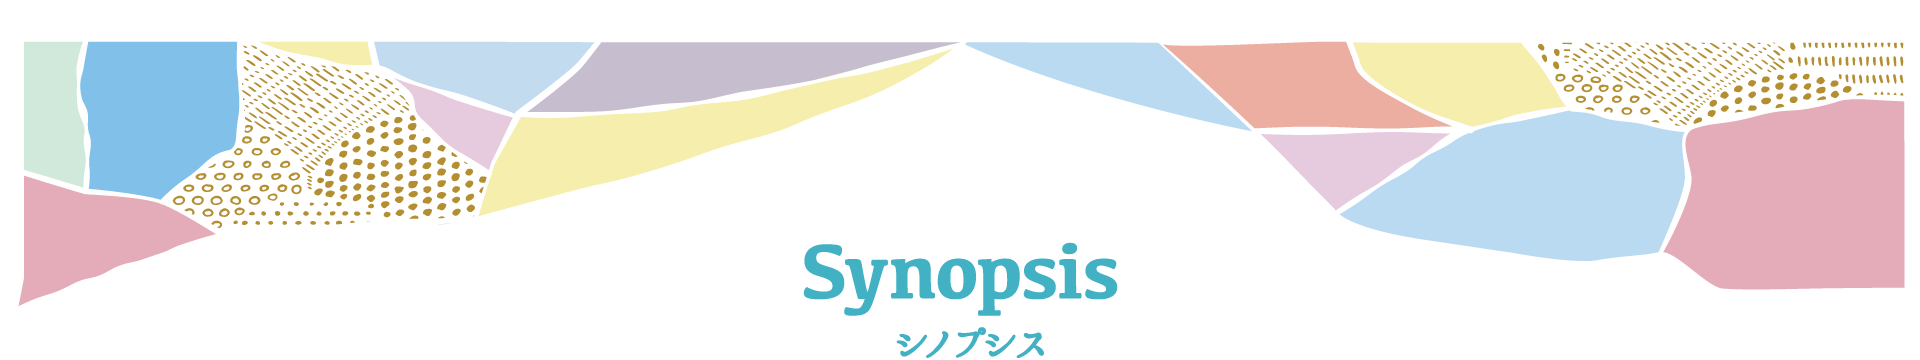 シノプシス